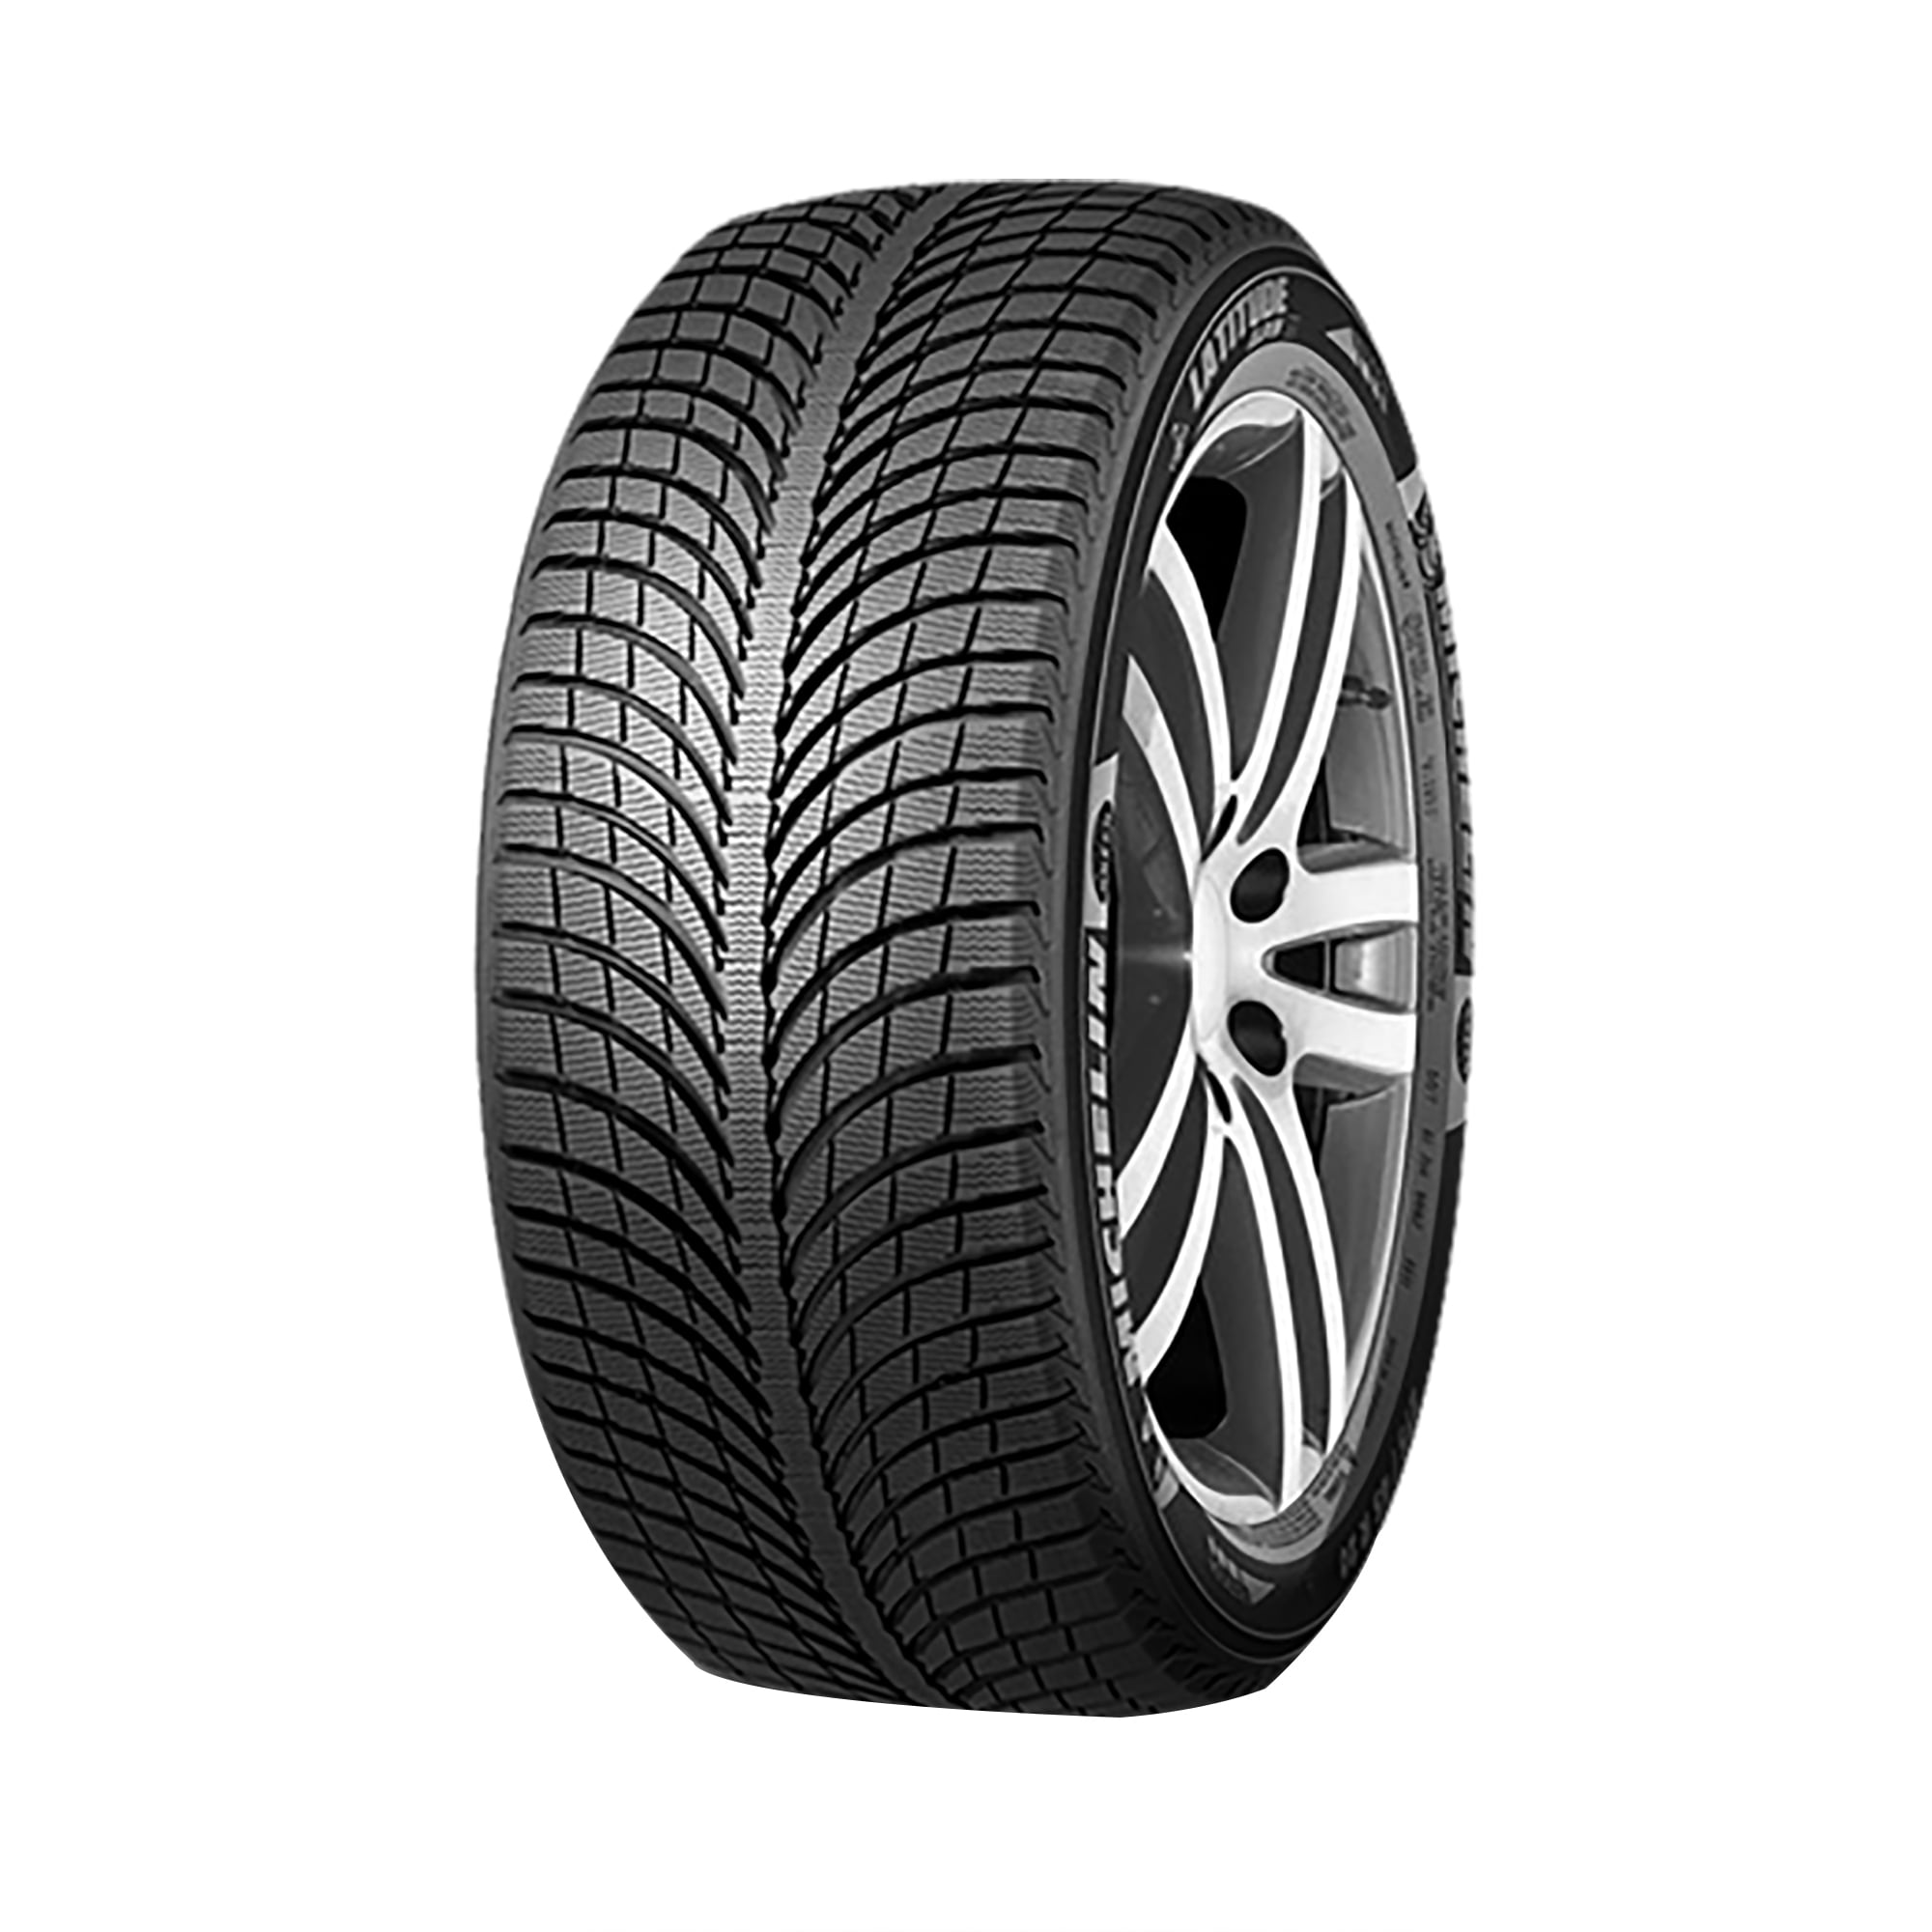 Michelin Latitude Alpin LA2 Tire 265/45R20 104V Fits: 2019-20 Acura MDX  SH-AWD, 2017-18 Porsche Macan GTS